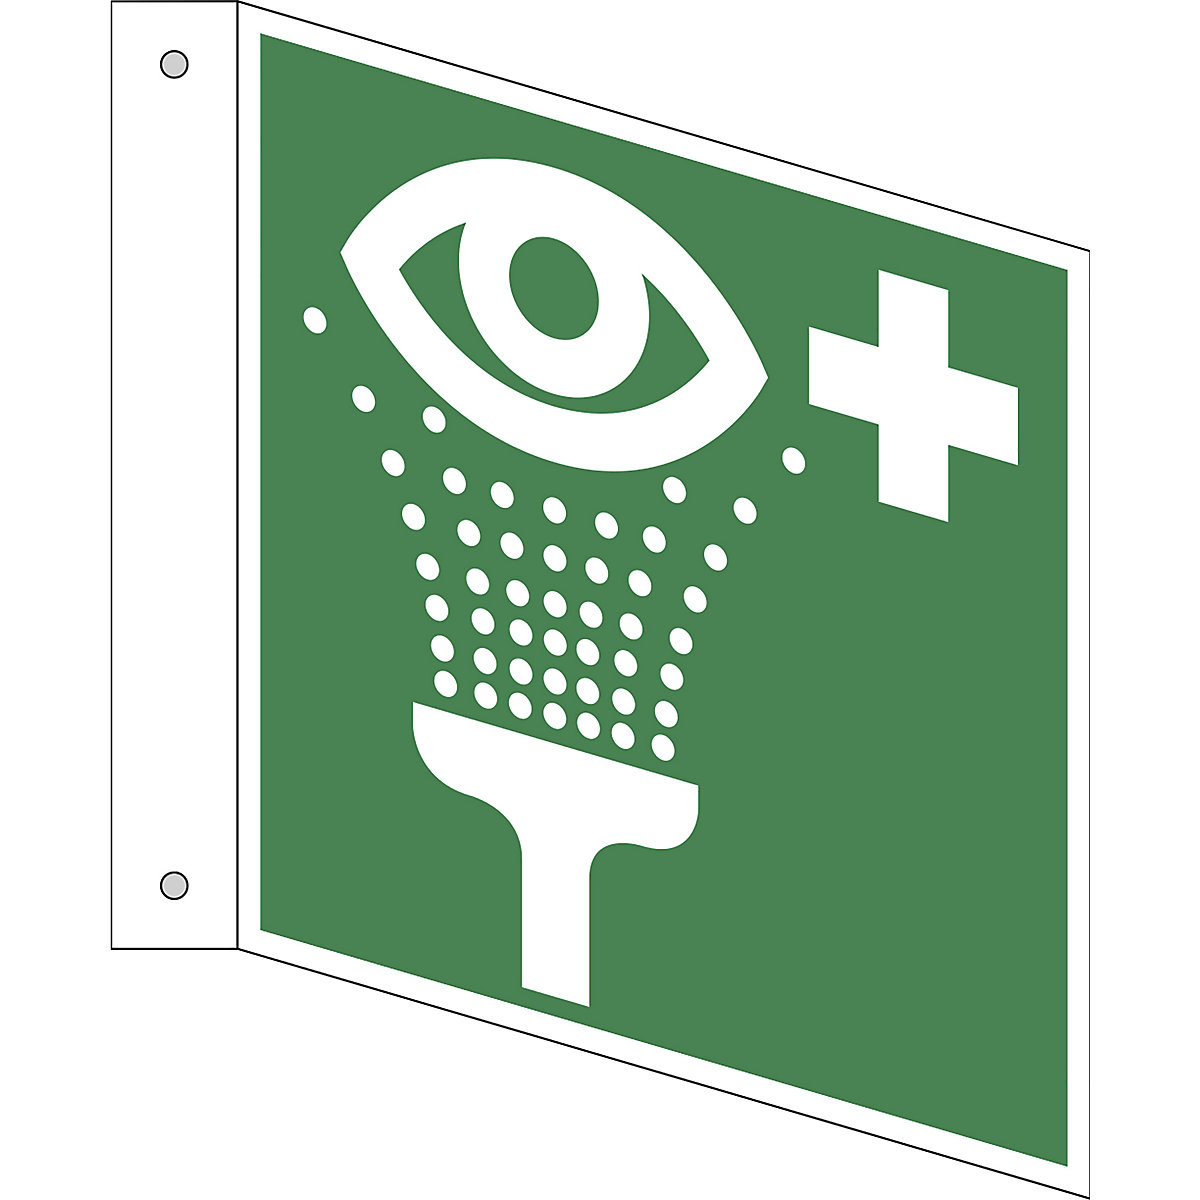 Úniková značka, Zařízení pro výplach očí, bal.j. 10 ks, hliník, vlajkový štítek, 150 x 150 mm